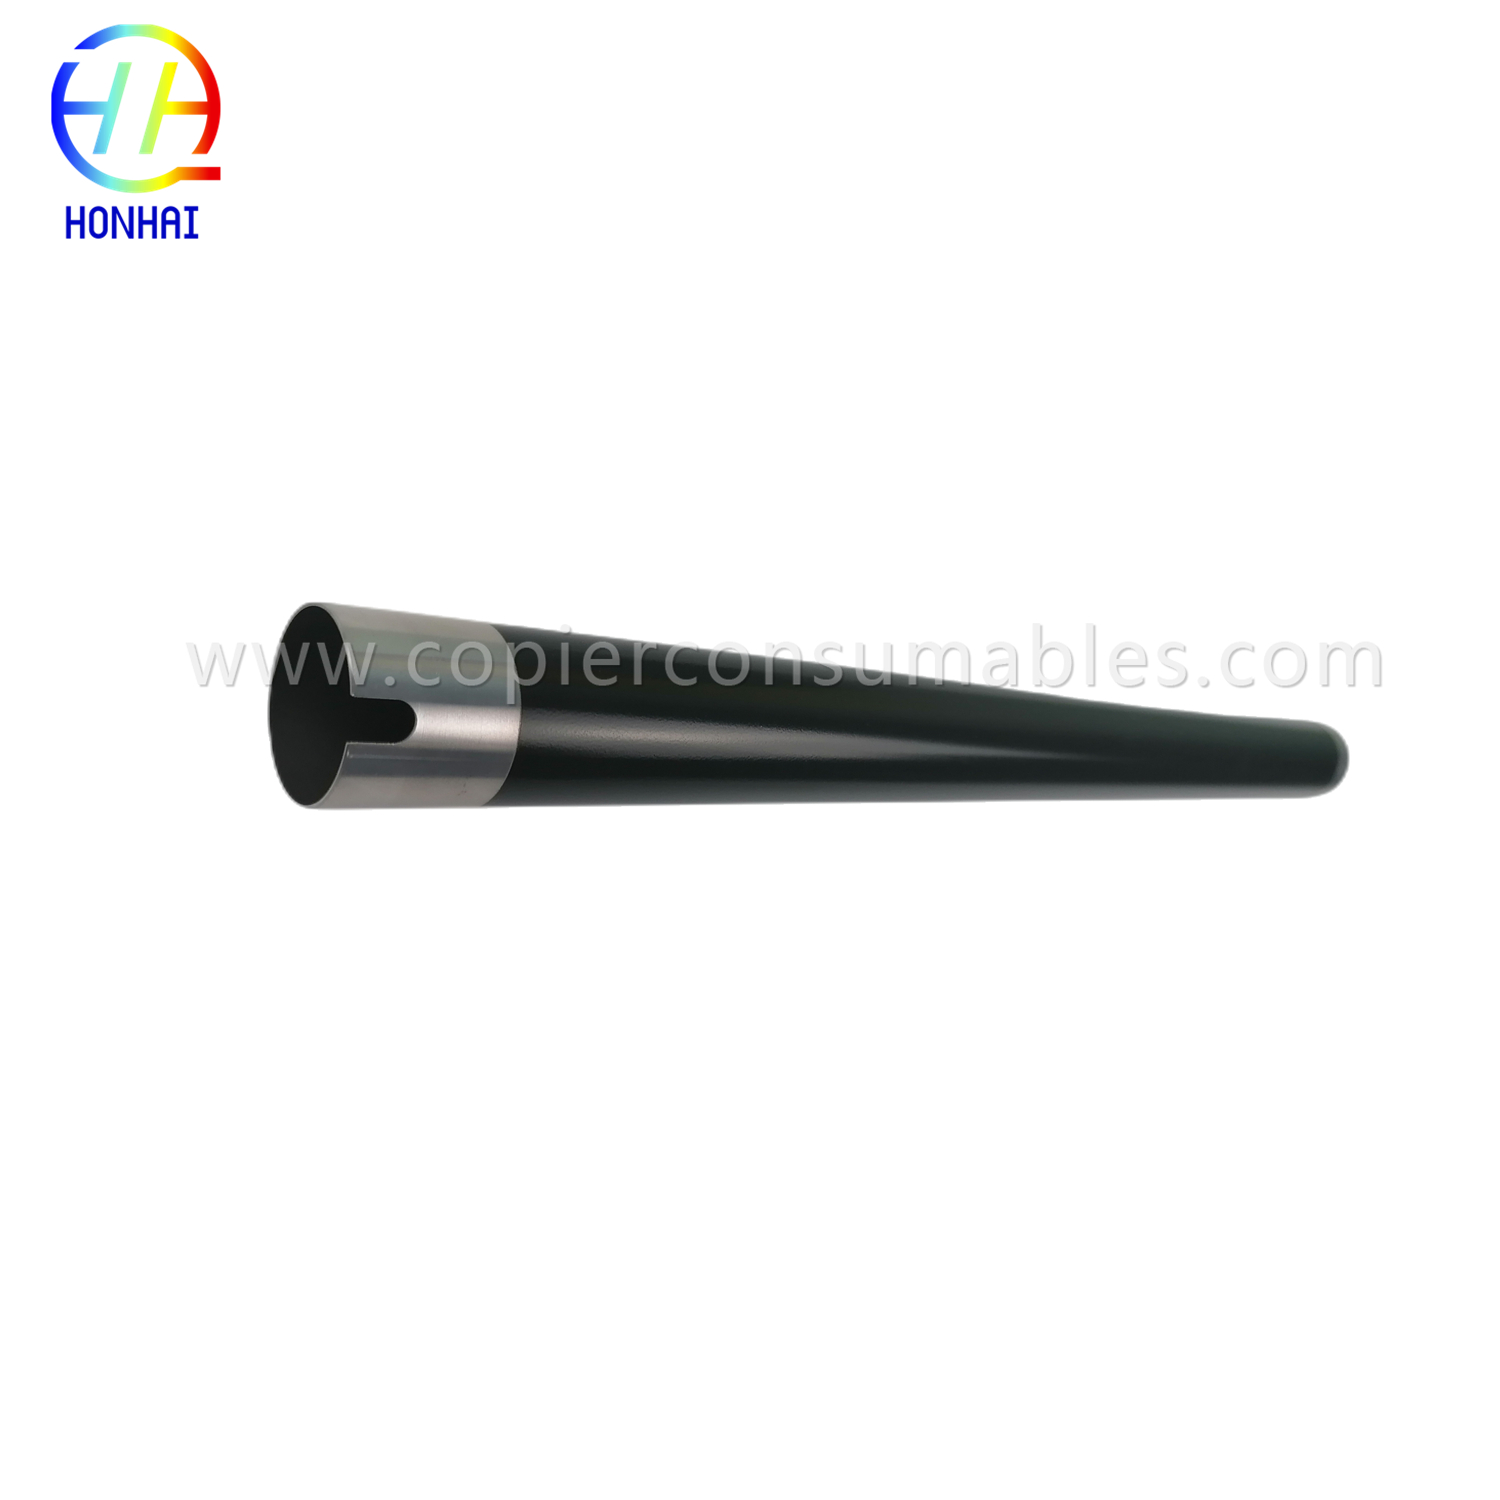 https://www.copierhonhaitech.com/upper-fuser-roller-for-kyocera-302nl93060-2nl93060-taskalfa-3010i-3510i-3011i-3511i-3010-3510-3011-3511-hot-heat-roller-product/